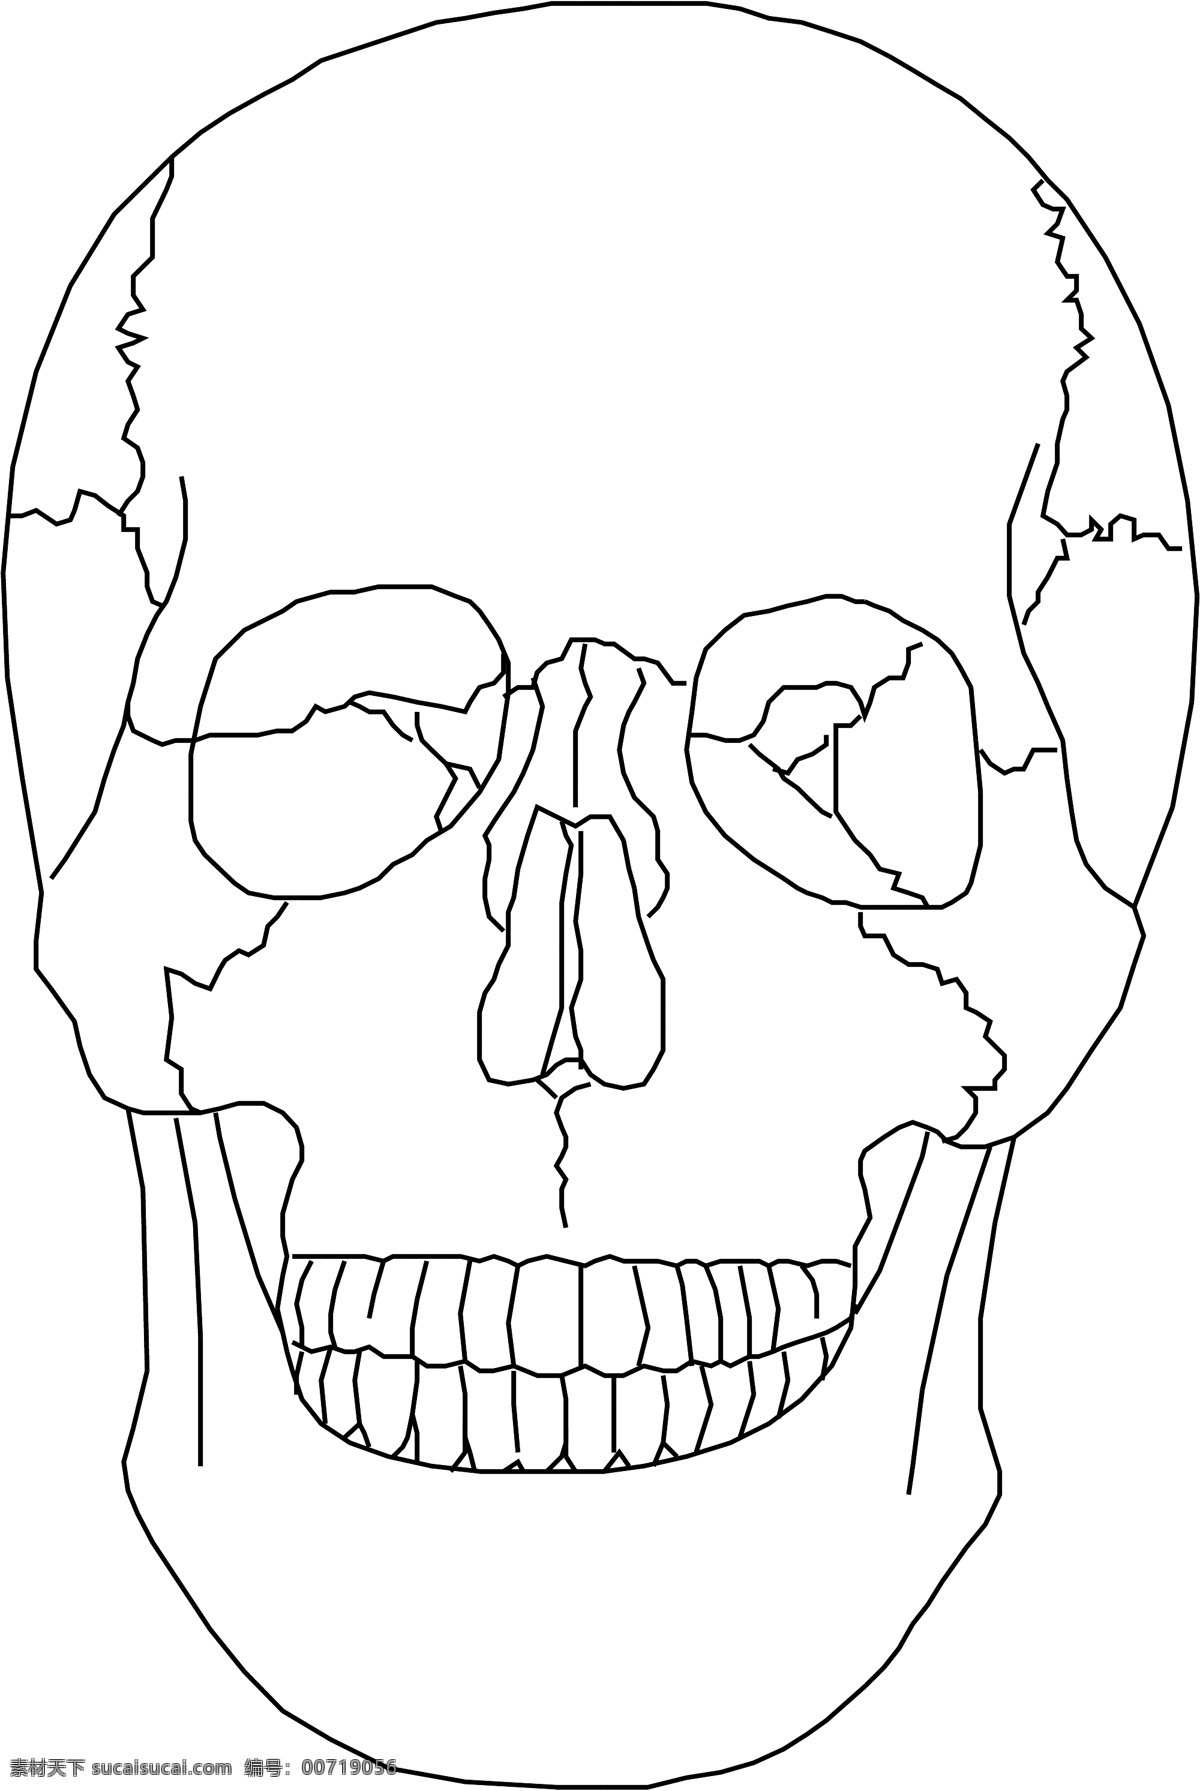 人体骨骼 矢量下载 网页矢量 商业矢量 矢量用具 白色